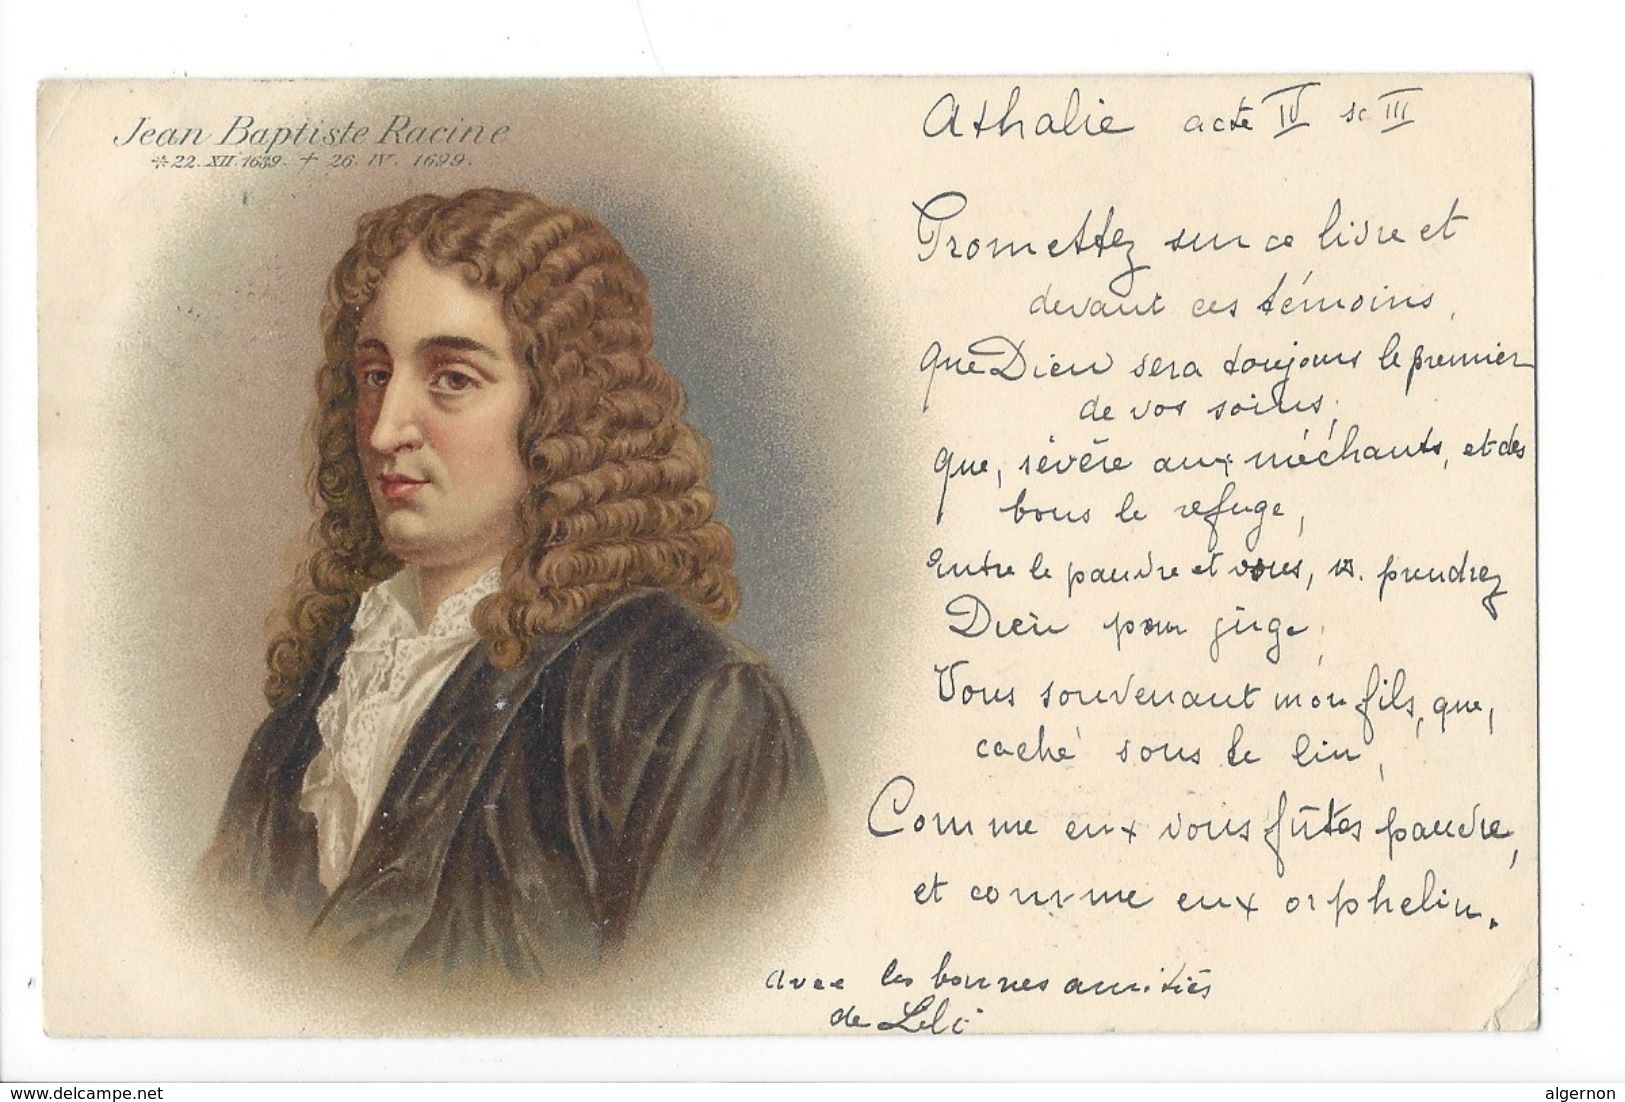 17912 - Jean-Baptiste Racine - Ecrivains